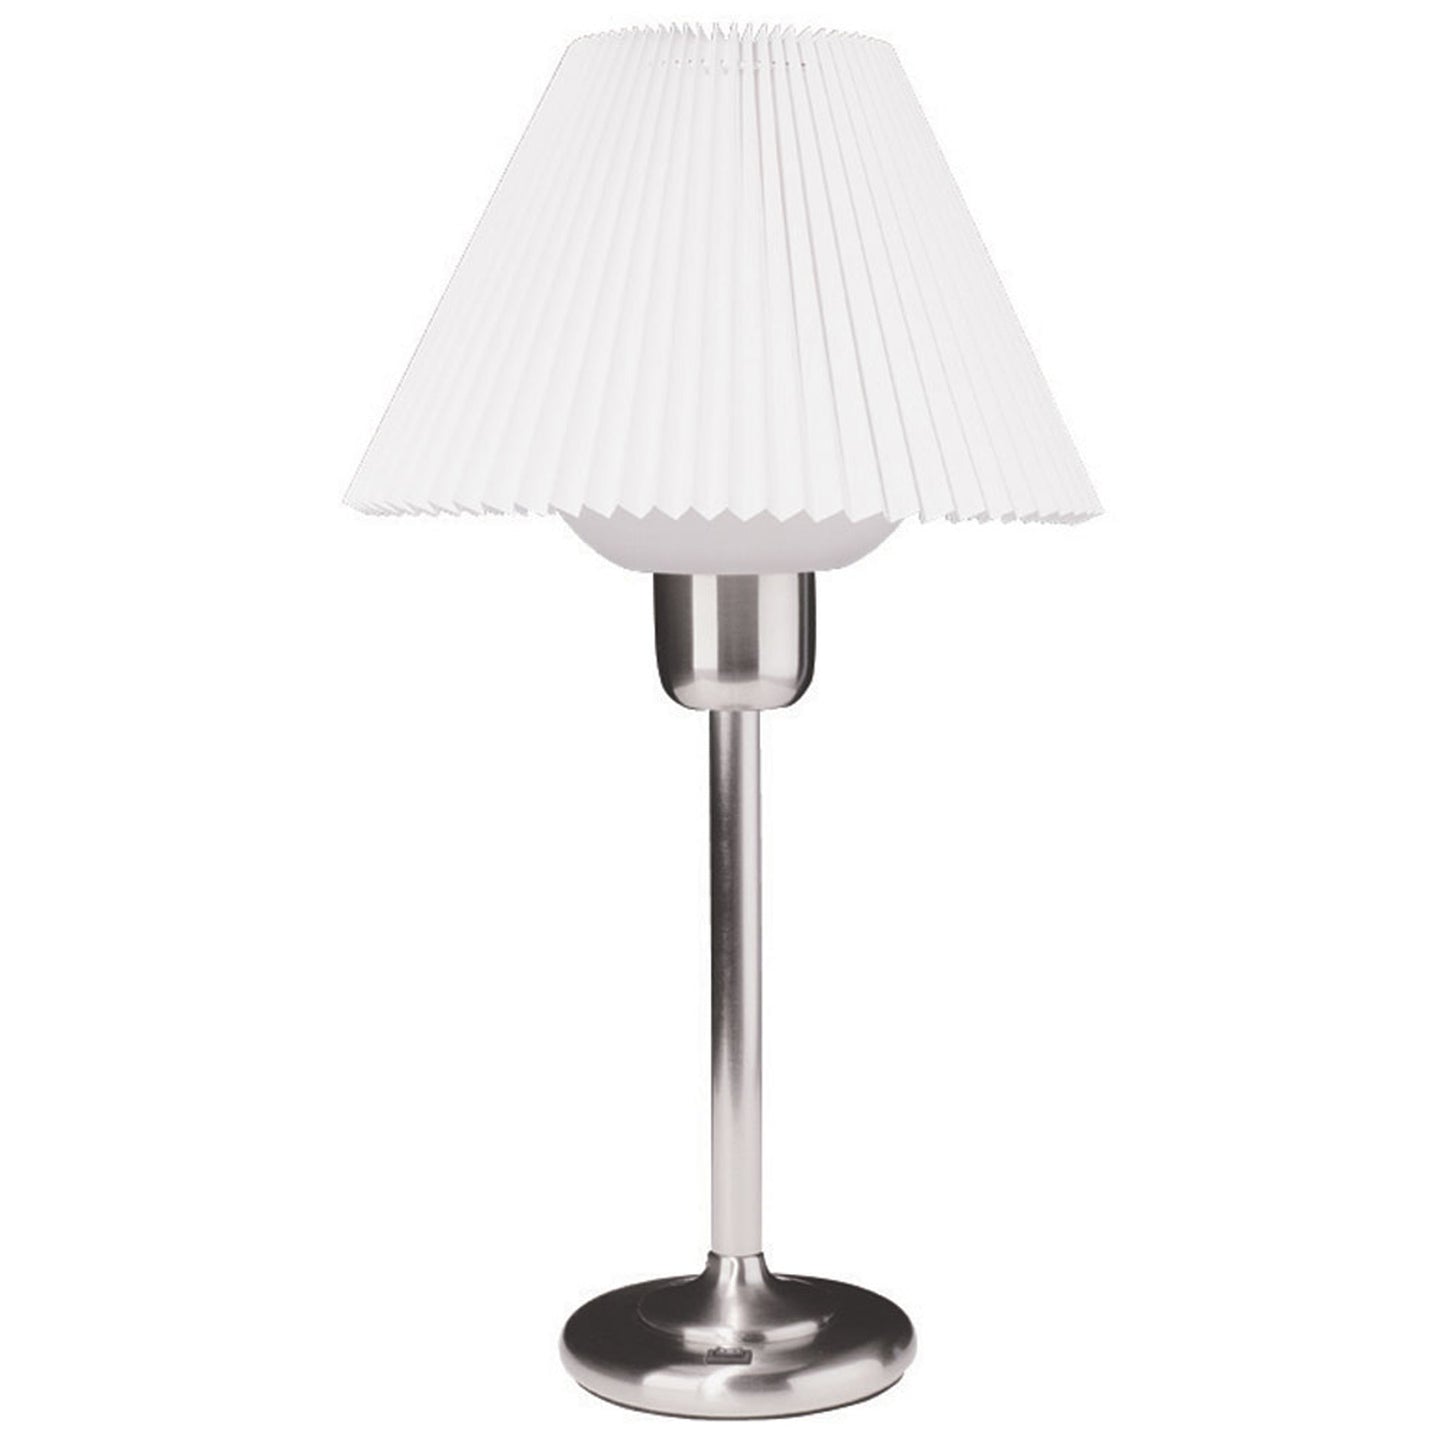 Dainolite Satin Chrome Table Lamp with 200 Watt Bulb included